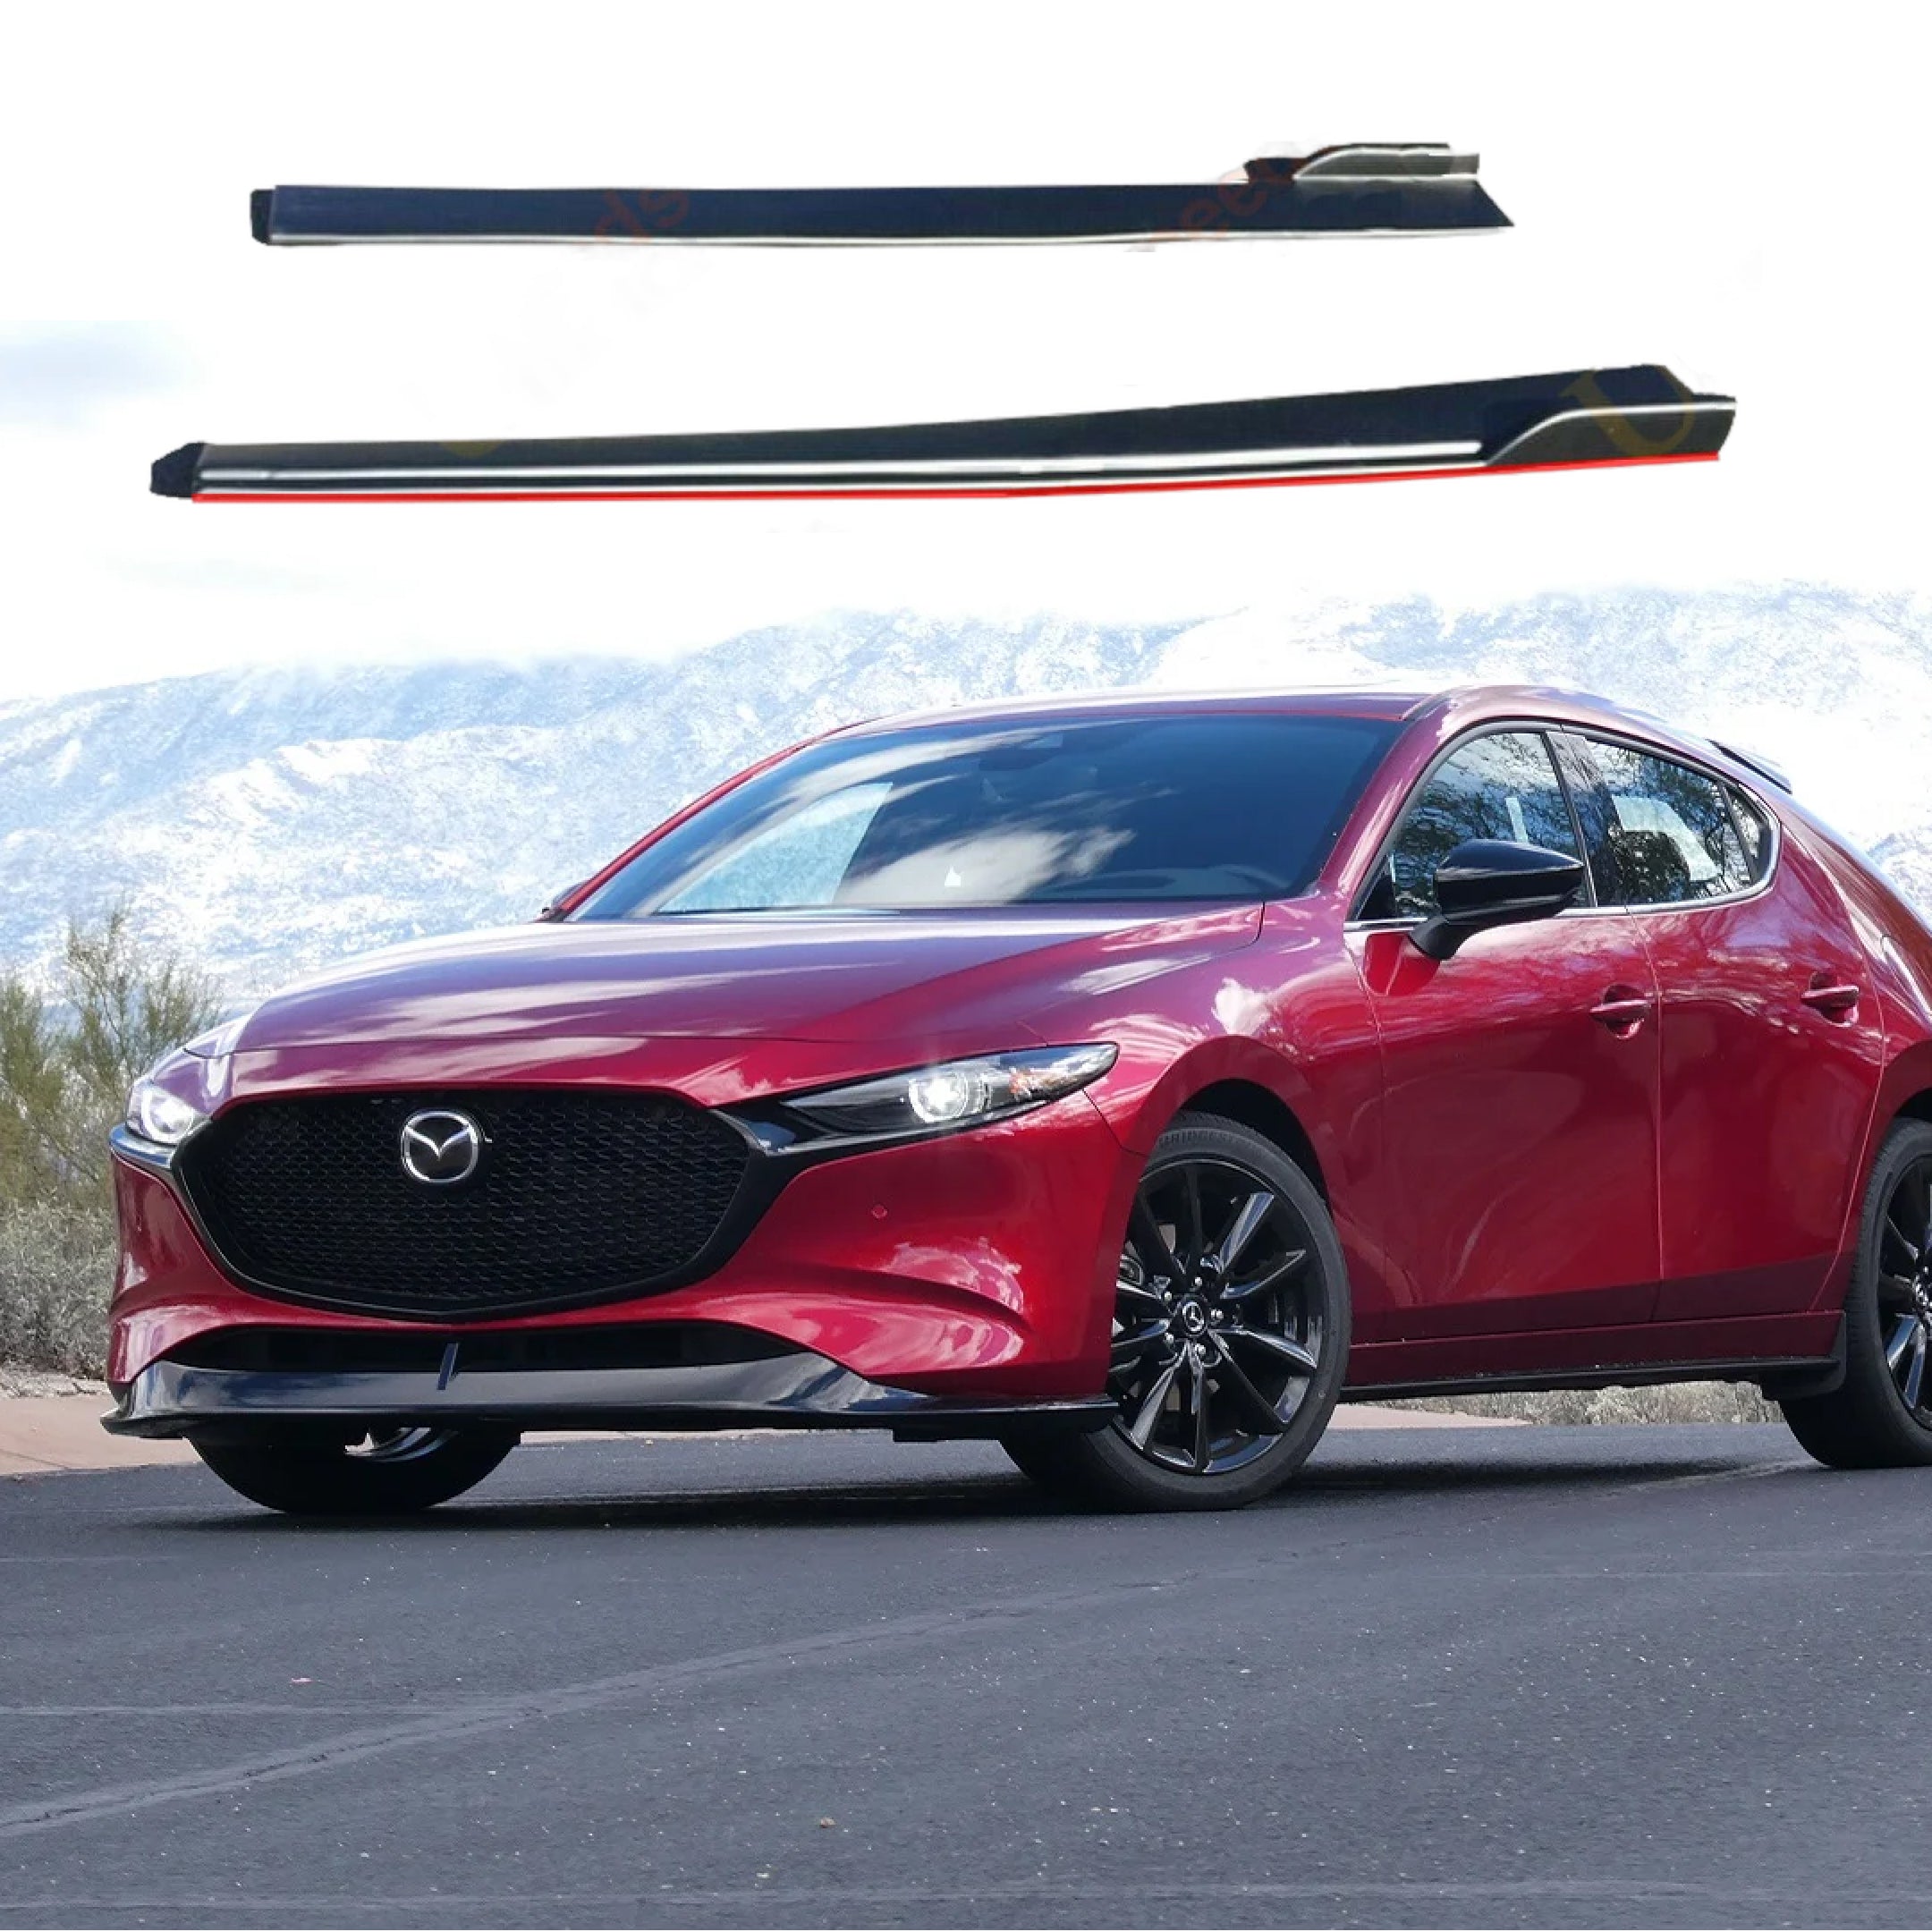 Compatible con Mazda Mazda3 Sedan 2012-2022 de 4 puertas, color negro y rojo, kit de faldones laterales para carrocería.